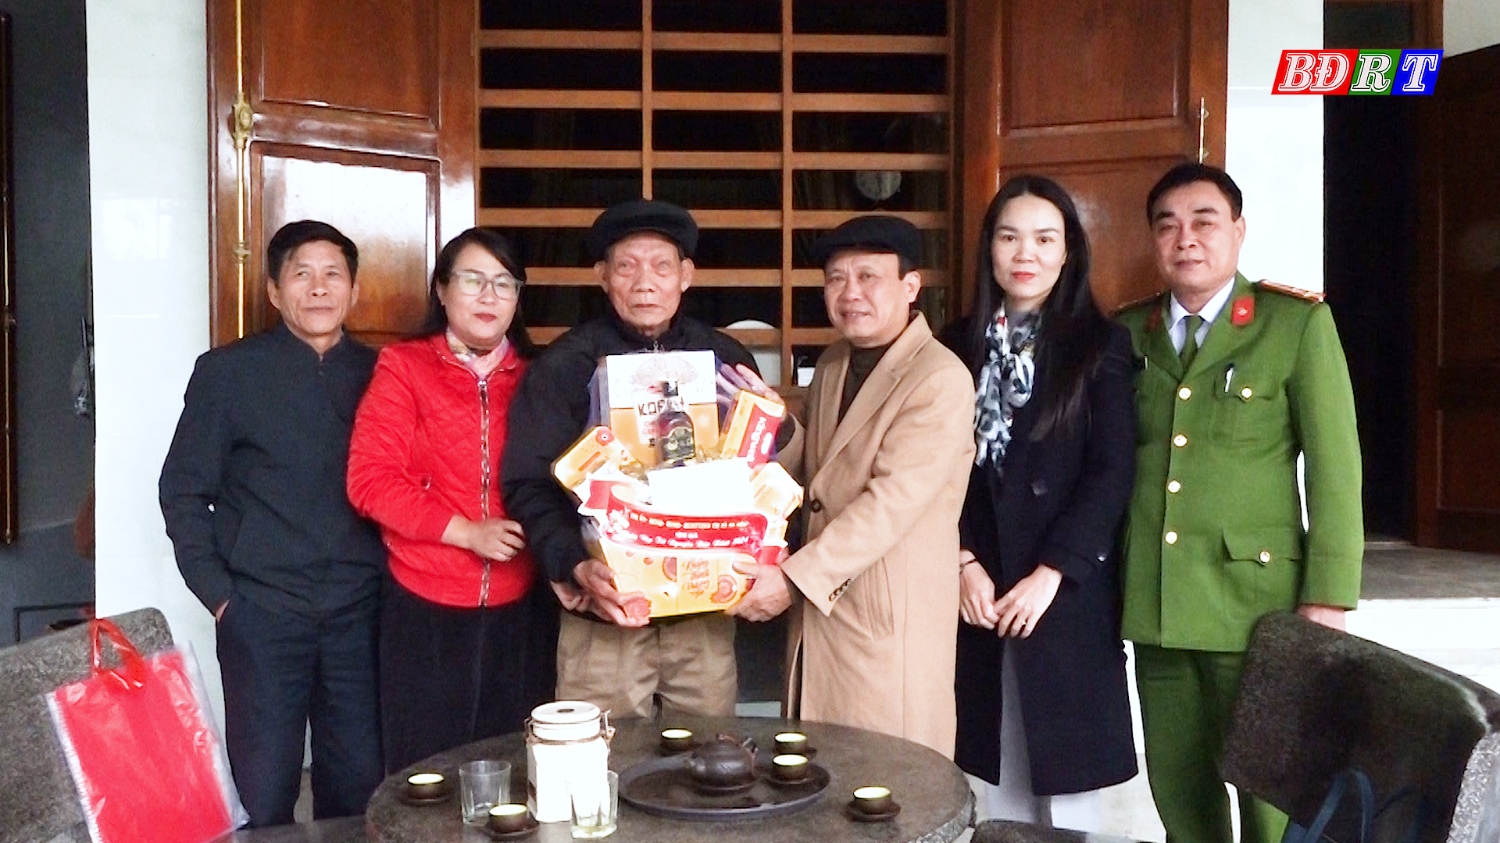 Đồng chí Phó Bí thư Thường trực Thị ủy và các đồng chí cùng đi trong đoàn tặng quà cho ông Phạm Xuân Thước